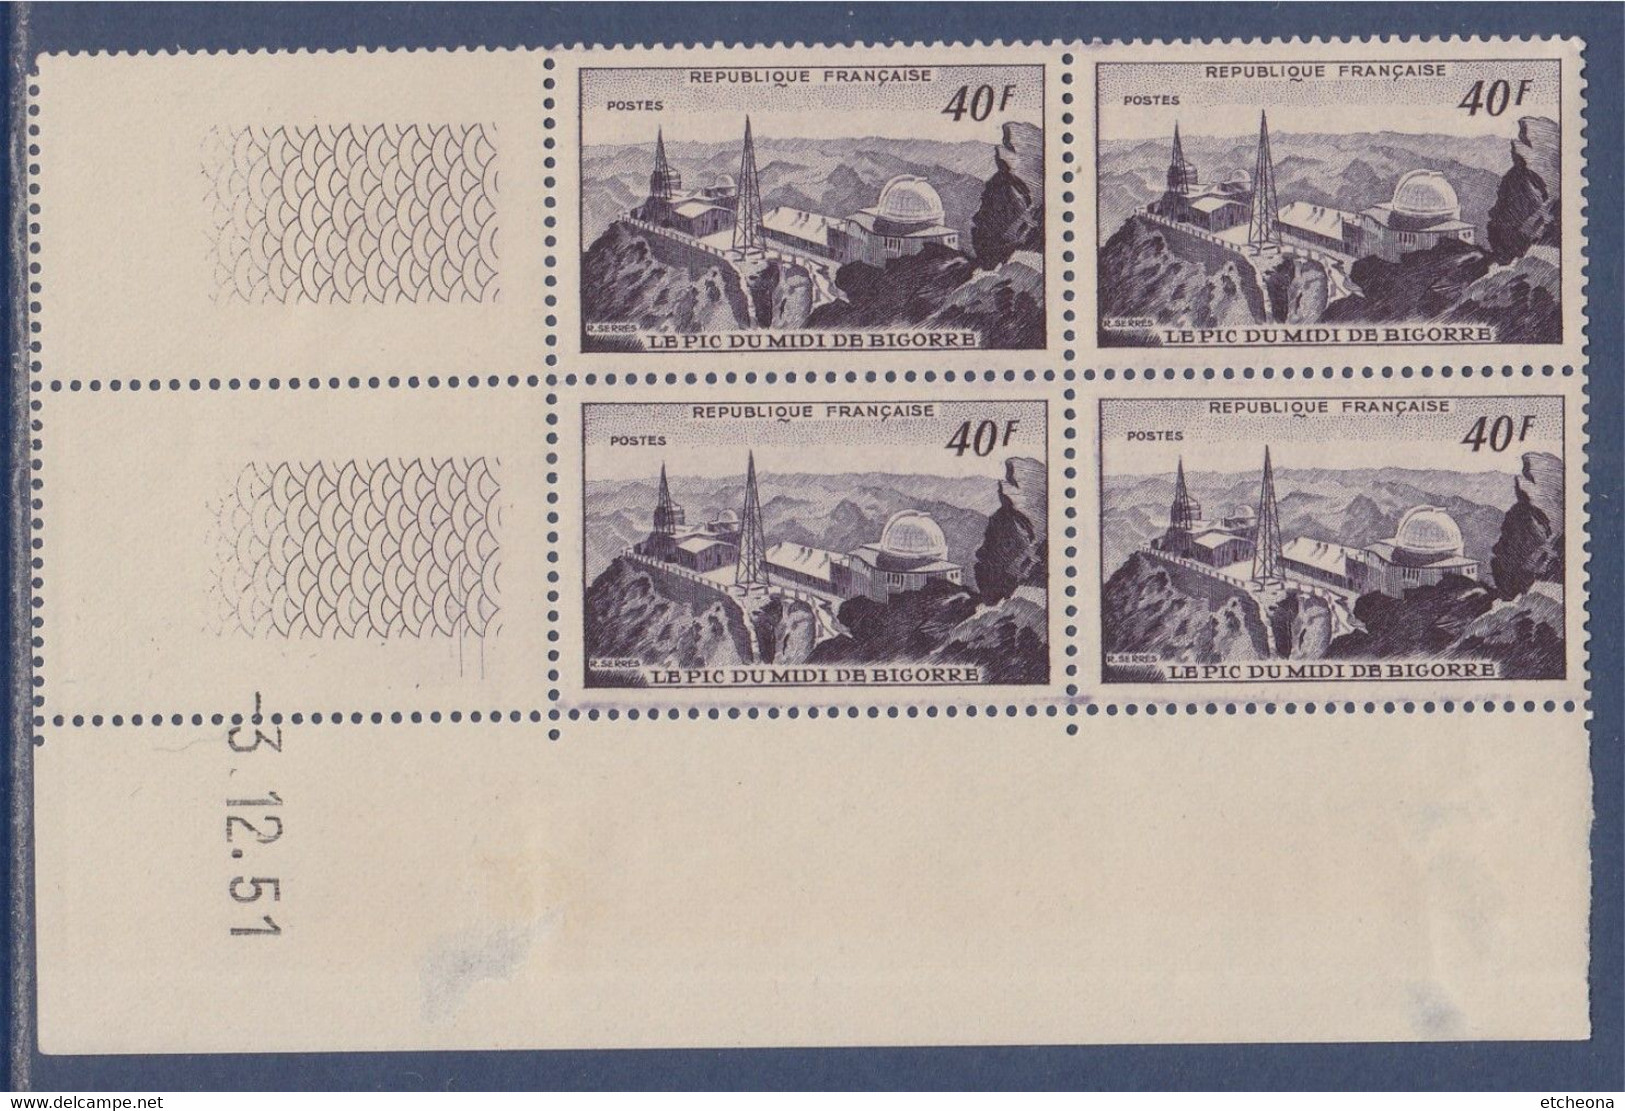 Le Pic Du Midi De Bigorre, Observatoire, Coin Daté N°916 Neuf 3.12.51 - 1950-1959